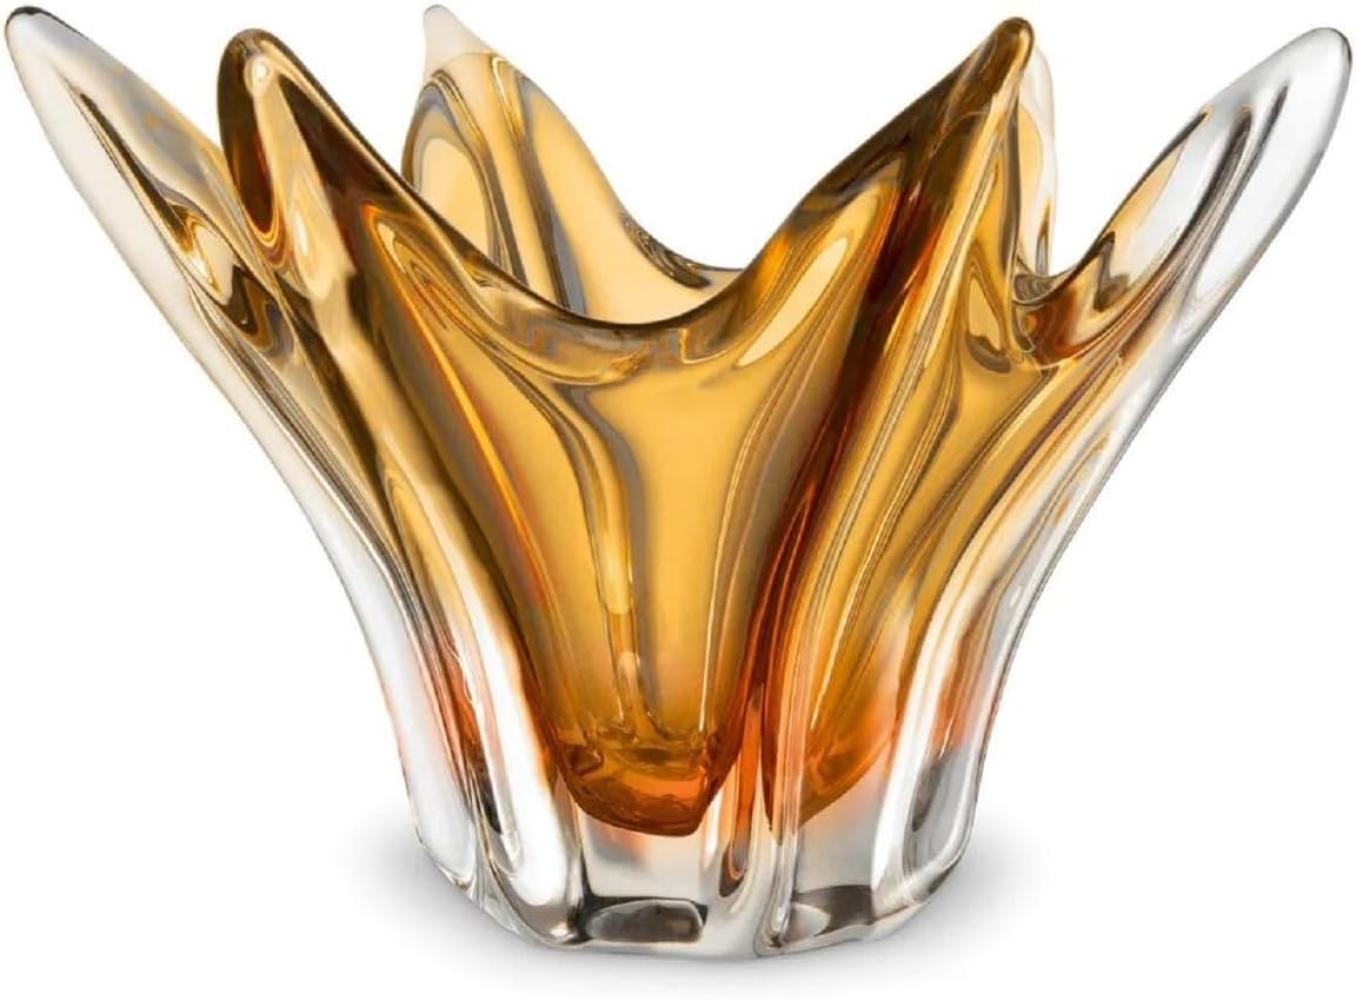 Casa Padrino Luxus Glas Schüssel Gelb Ø 36,5 x H. 22,5 cm - Deko Schale aus mundgeblasenem Glas - Deko Accessoires - Luxus Qualität Bild 1